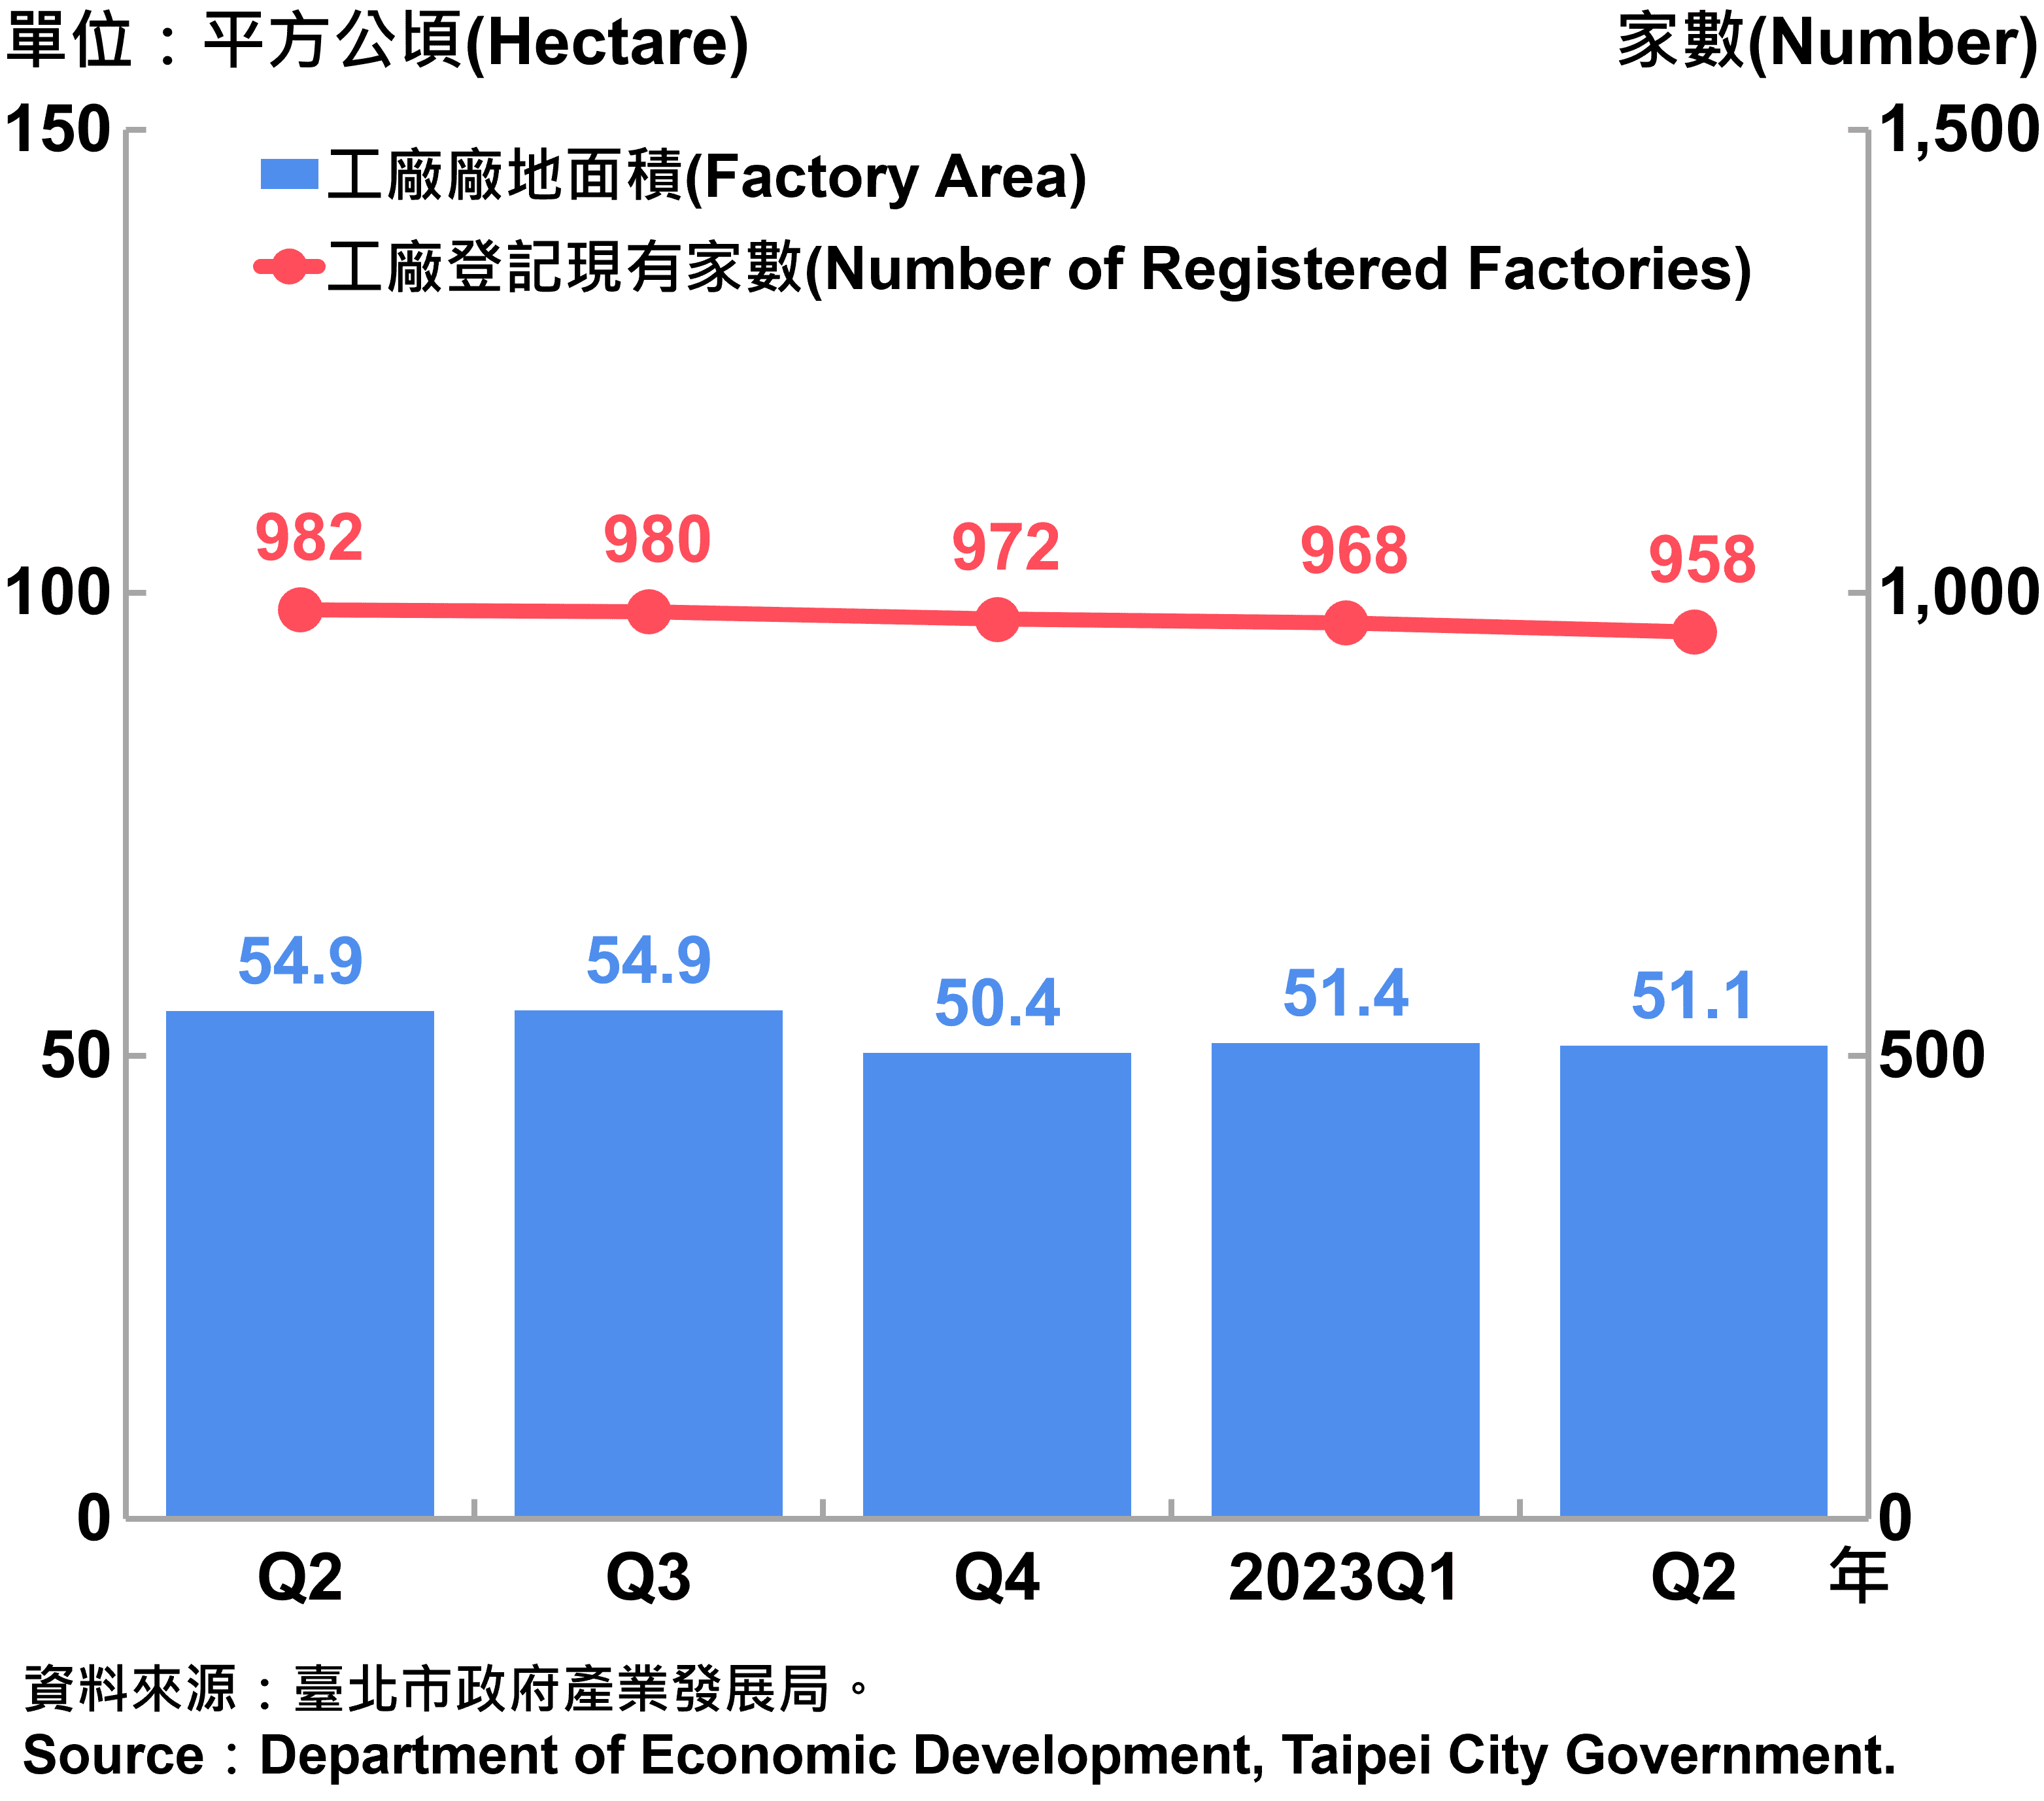 臺北市工廠登記家數及廠地面積—2023Q2 Factory Registration and Factory Area in Taipei City—2023Q2